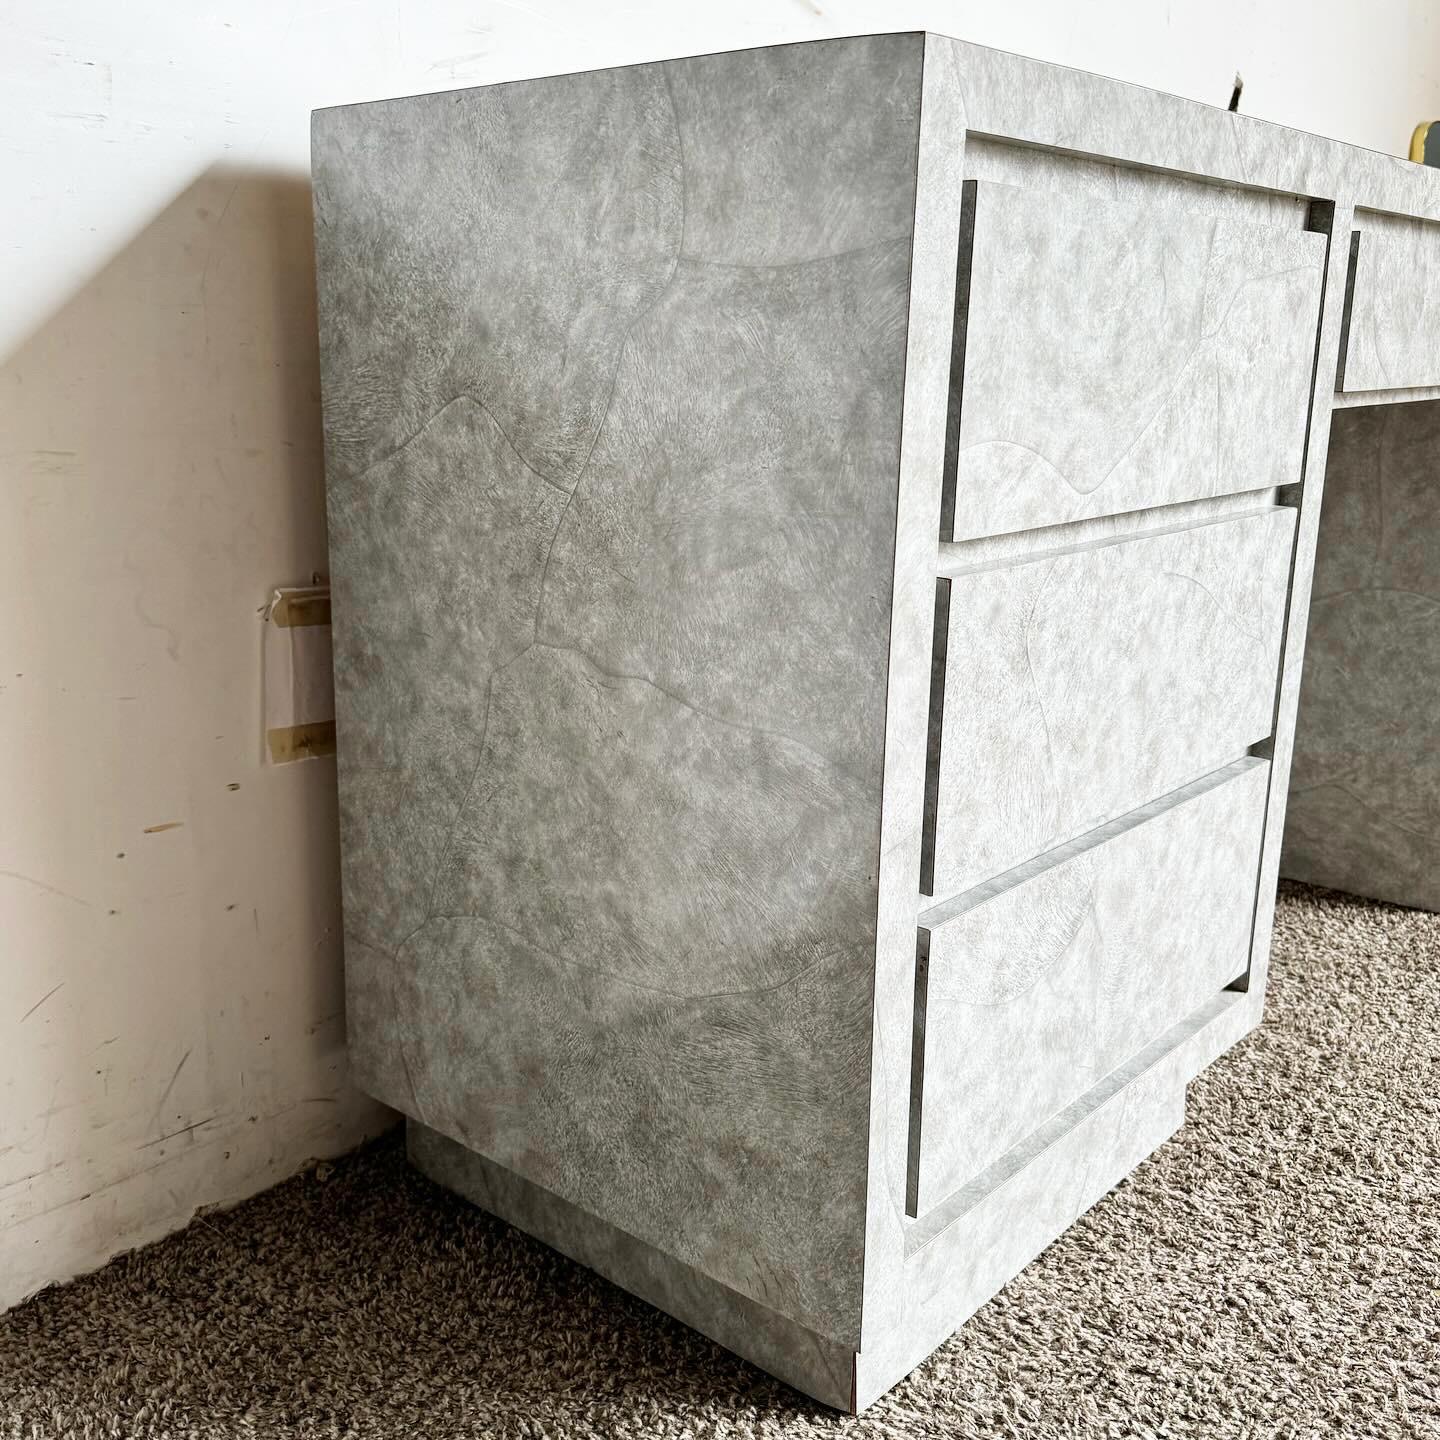 Améliorez votre espace de travail avec le bureau Postmodern Gray Faux Stone Laminate, doté de quatre tiroirs pour une organisation optimale. Ce bureau associe un stratifié contemporain en fausse pierre à une teinte grise élégante, créant ainsi un